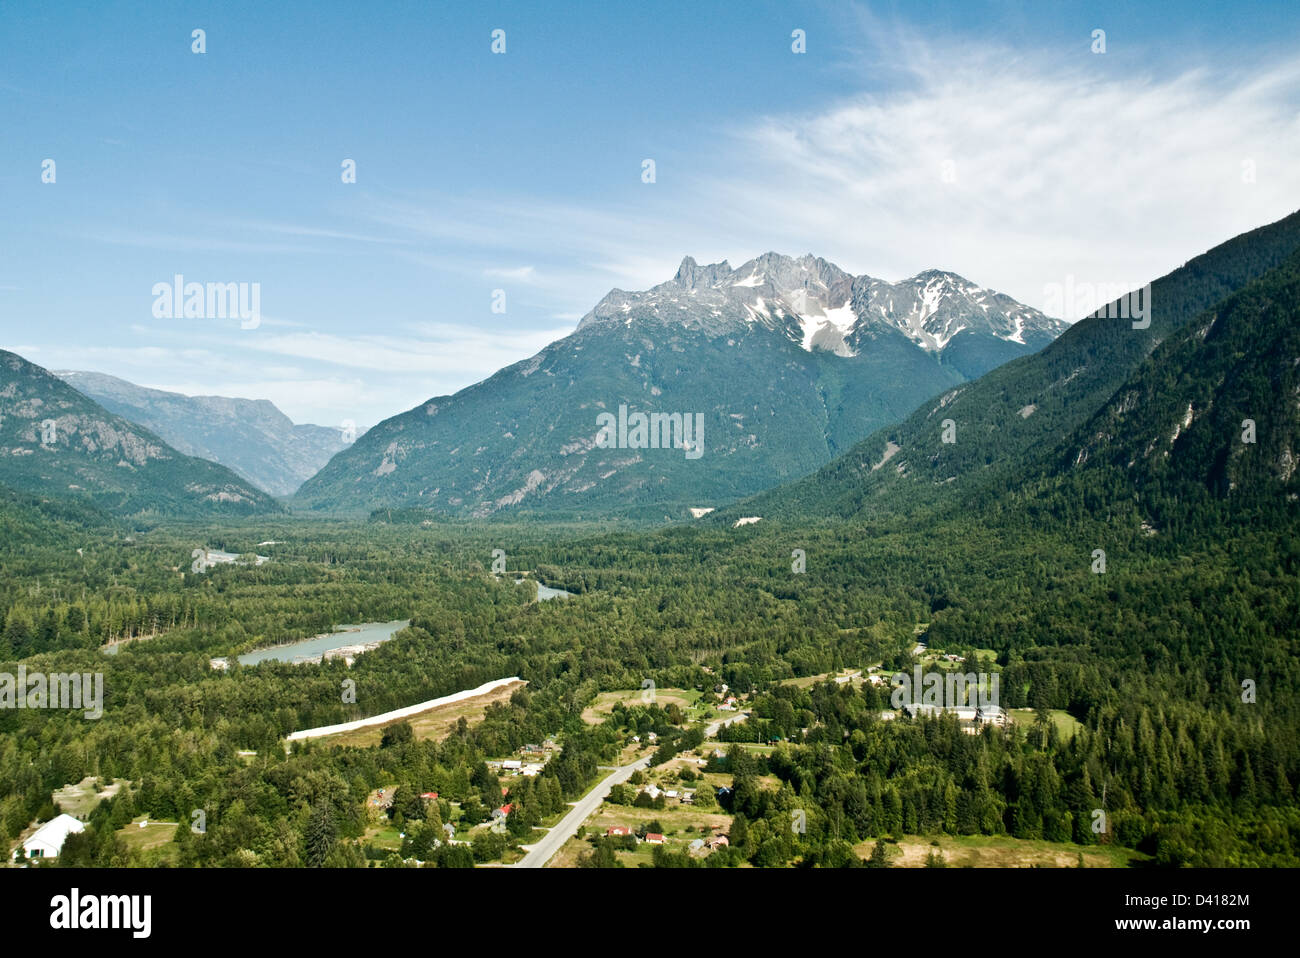 Une vue aérienne à l'ouest, dans la vallée de Bella Coola, au-dessus de Hagensborg, situé dans la forêt du Grand Ours, en Colombie-Britannique, Canada. Banque D'Images